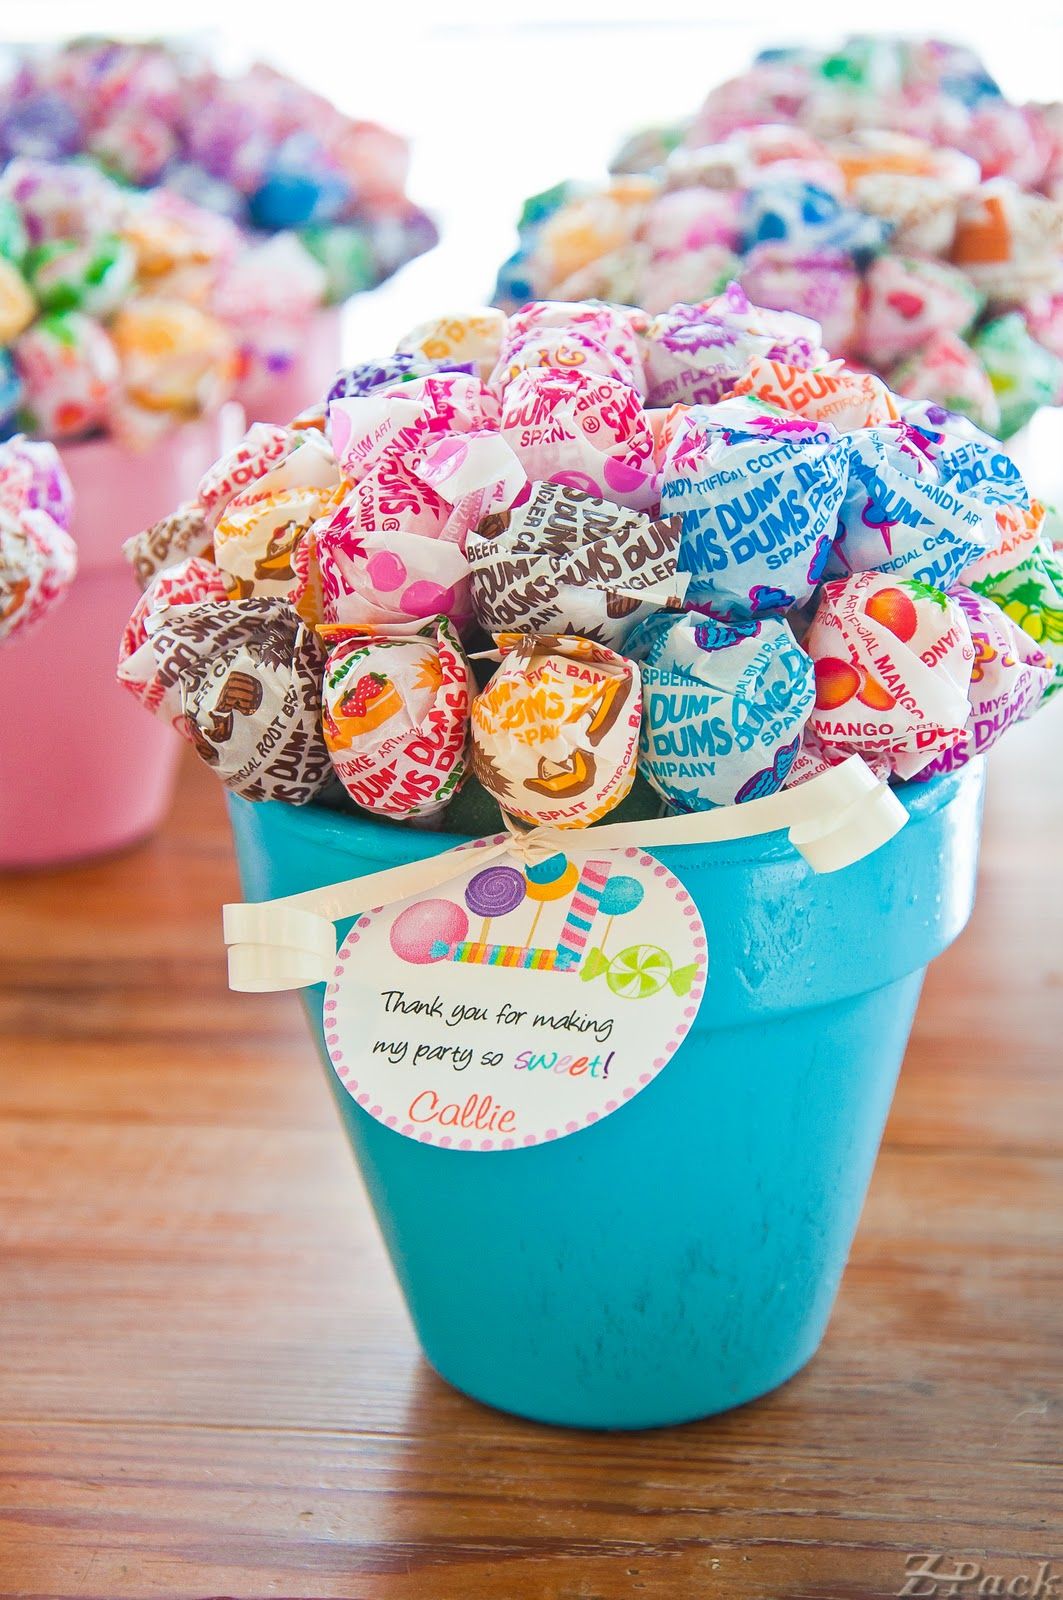 Dum-dum lollipop bouquets nestled in little painted pots–perfect party favors!